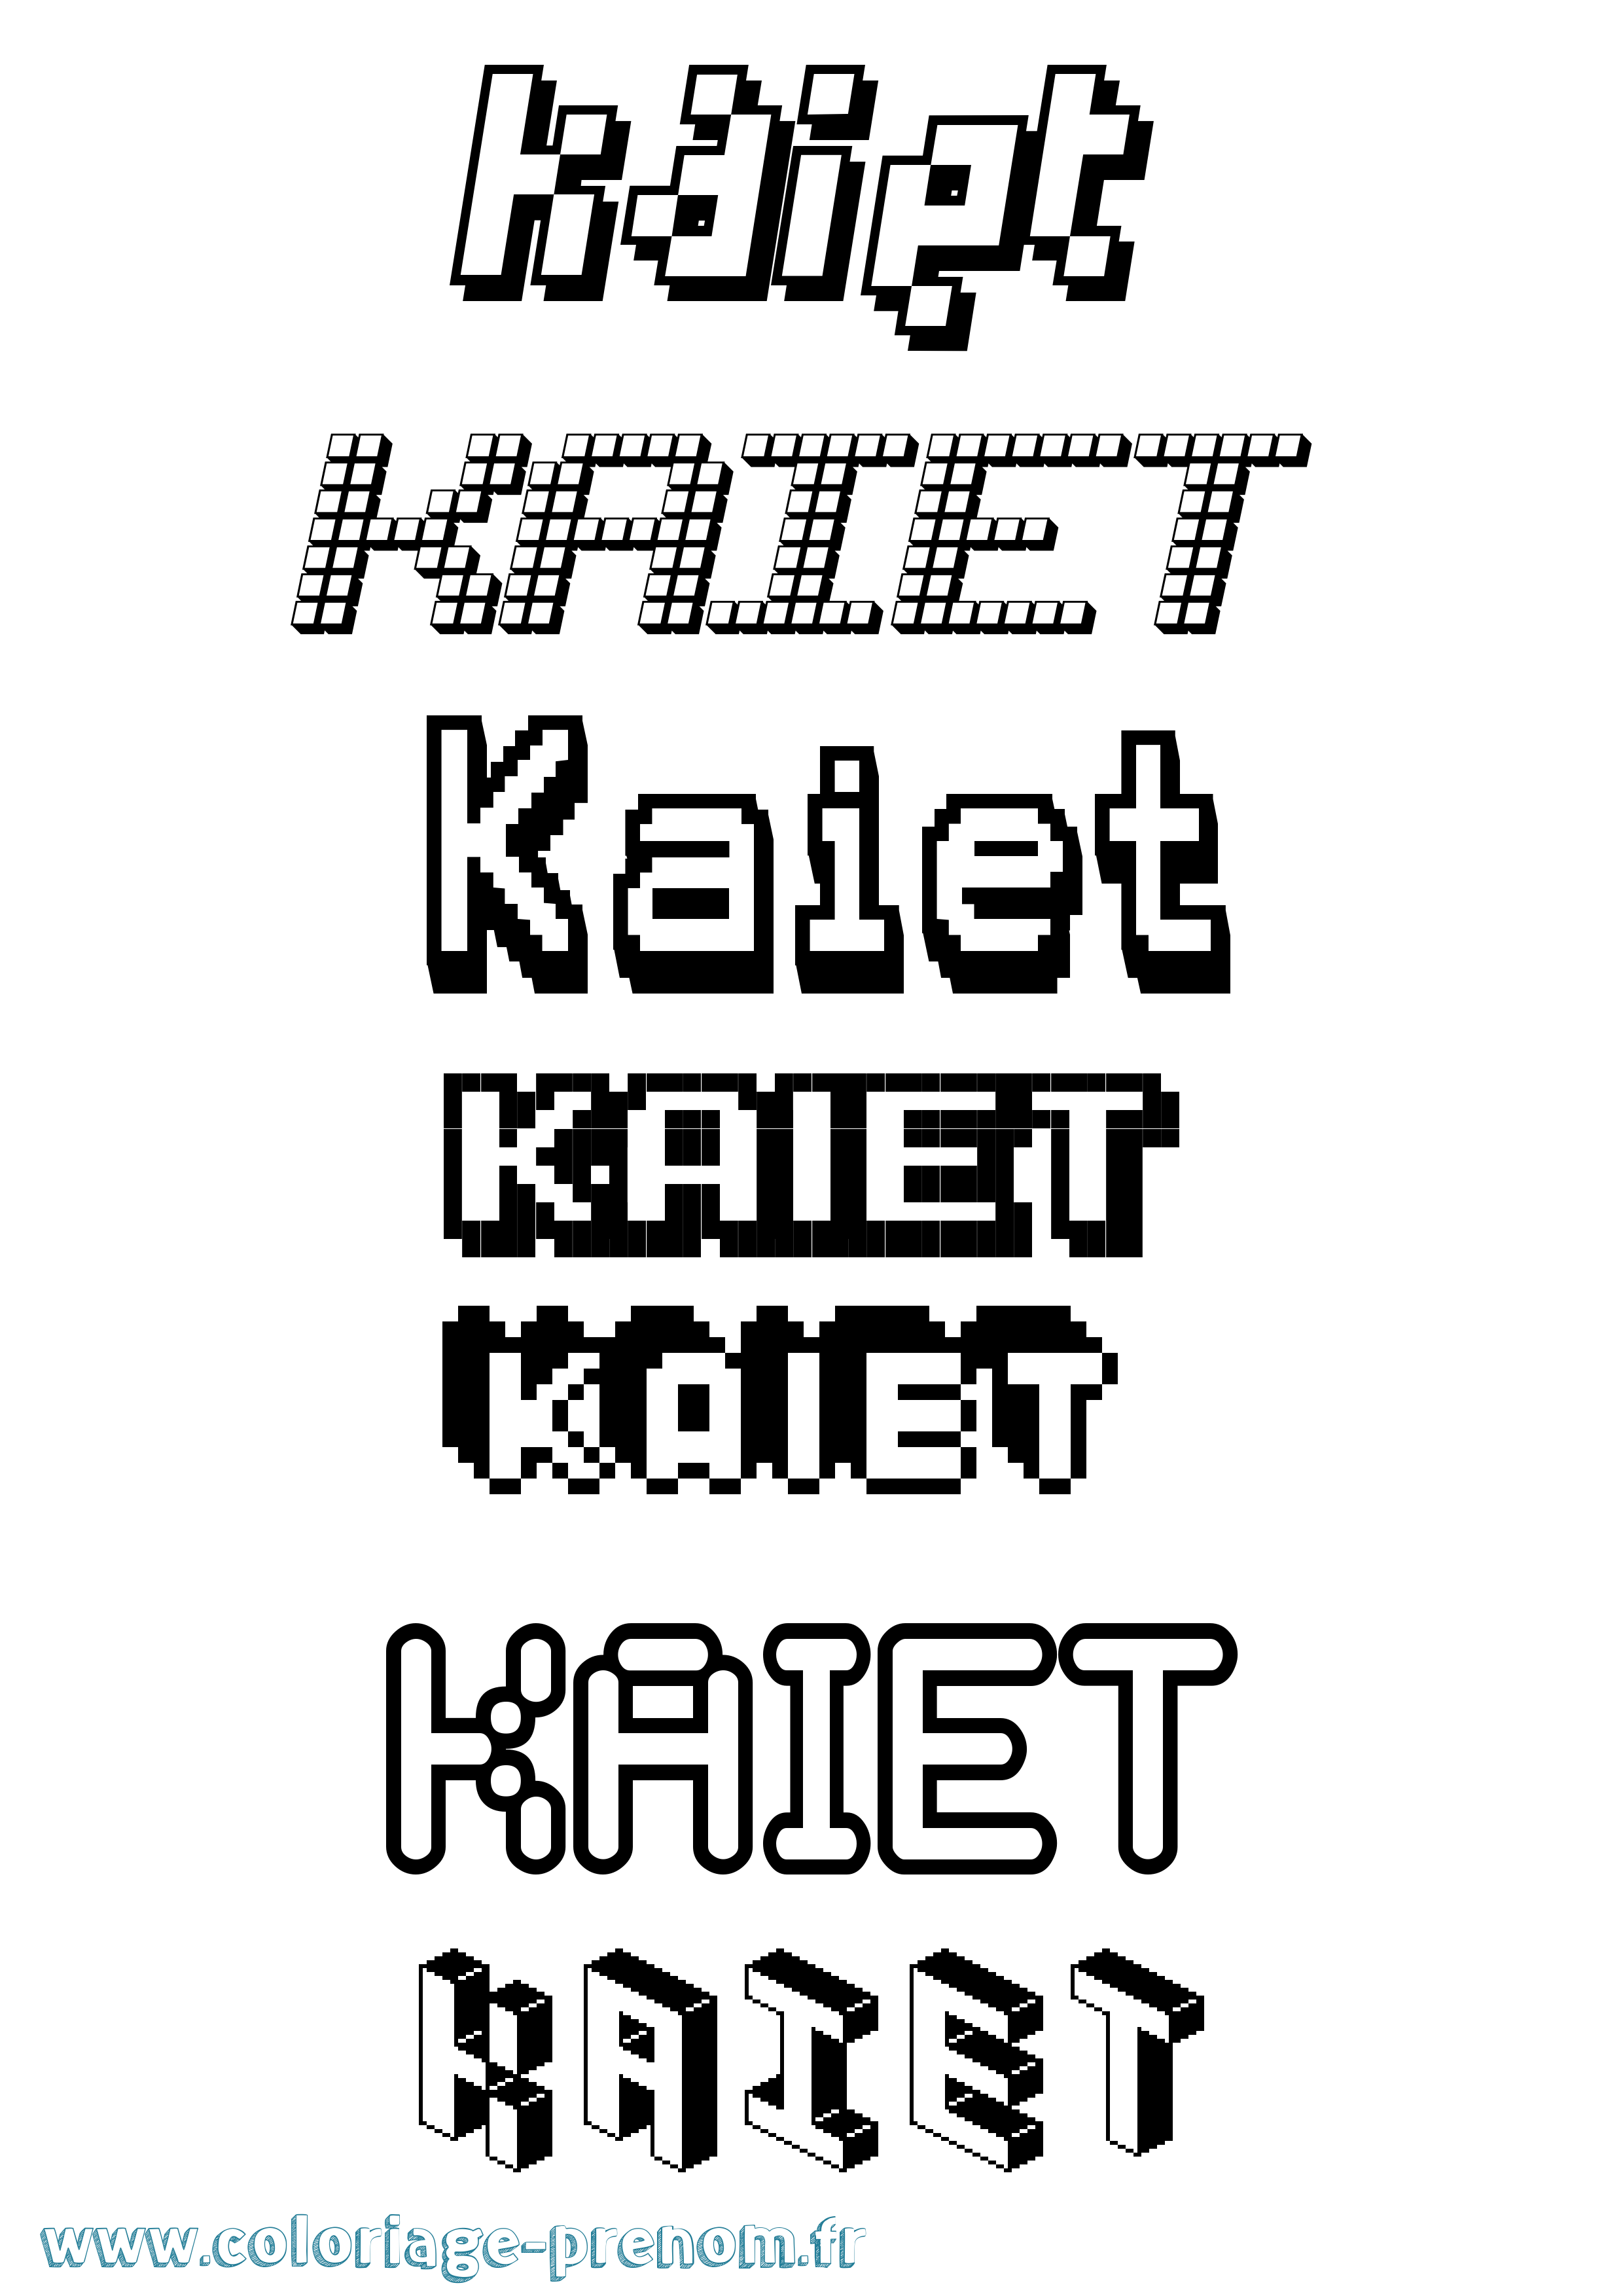 Coloriage prénom Kaiet Pixel